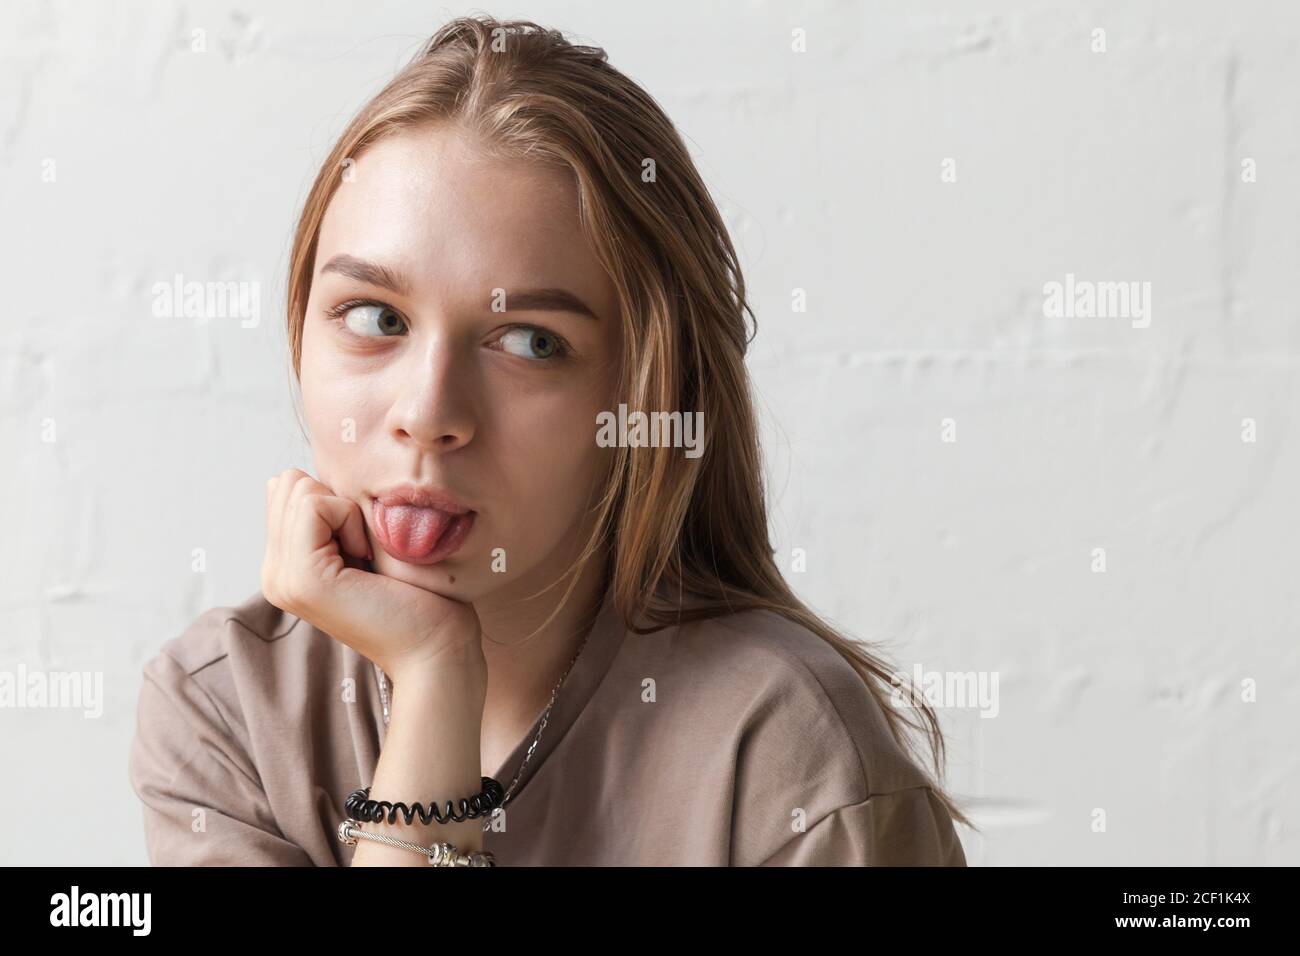 Drôle blonde adolescente montre la langue, gros plan portrait de studio avec lumière naturelle sur le mur blanc Banque D'Images